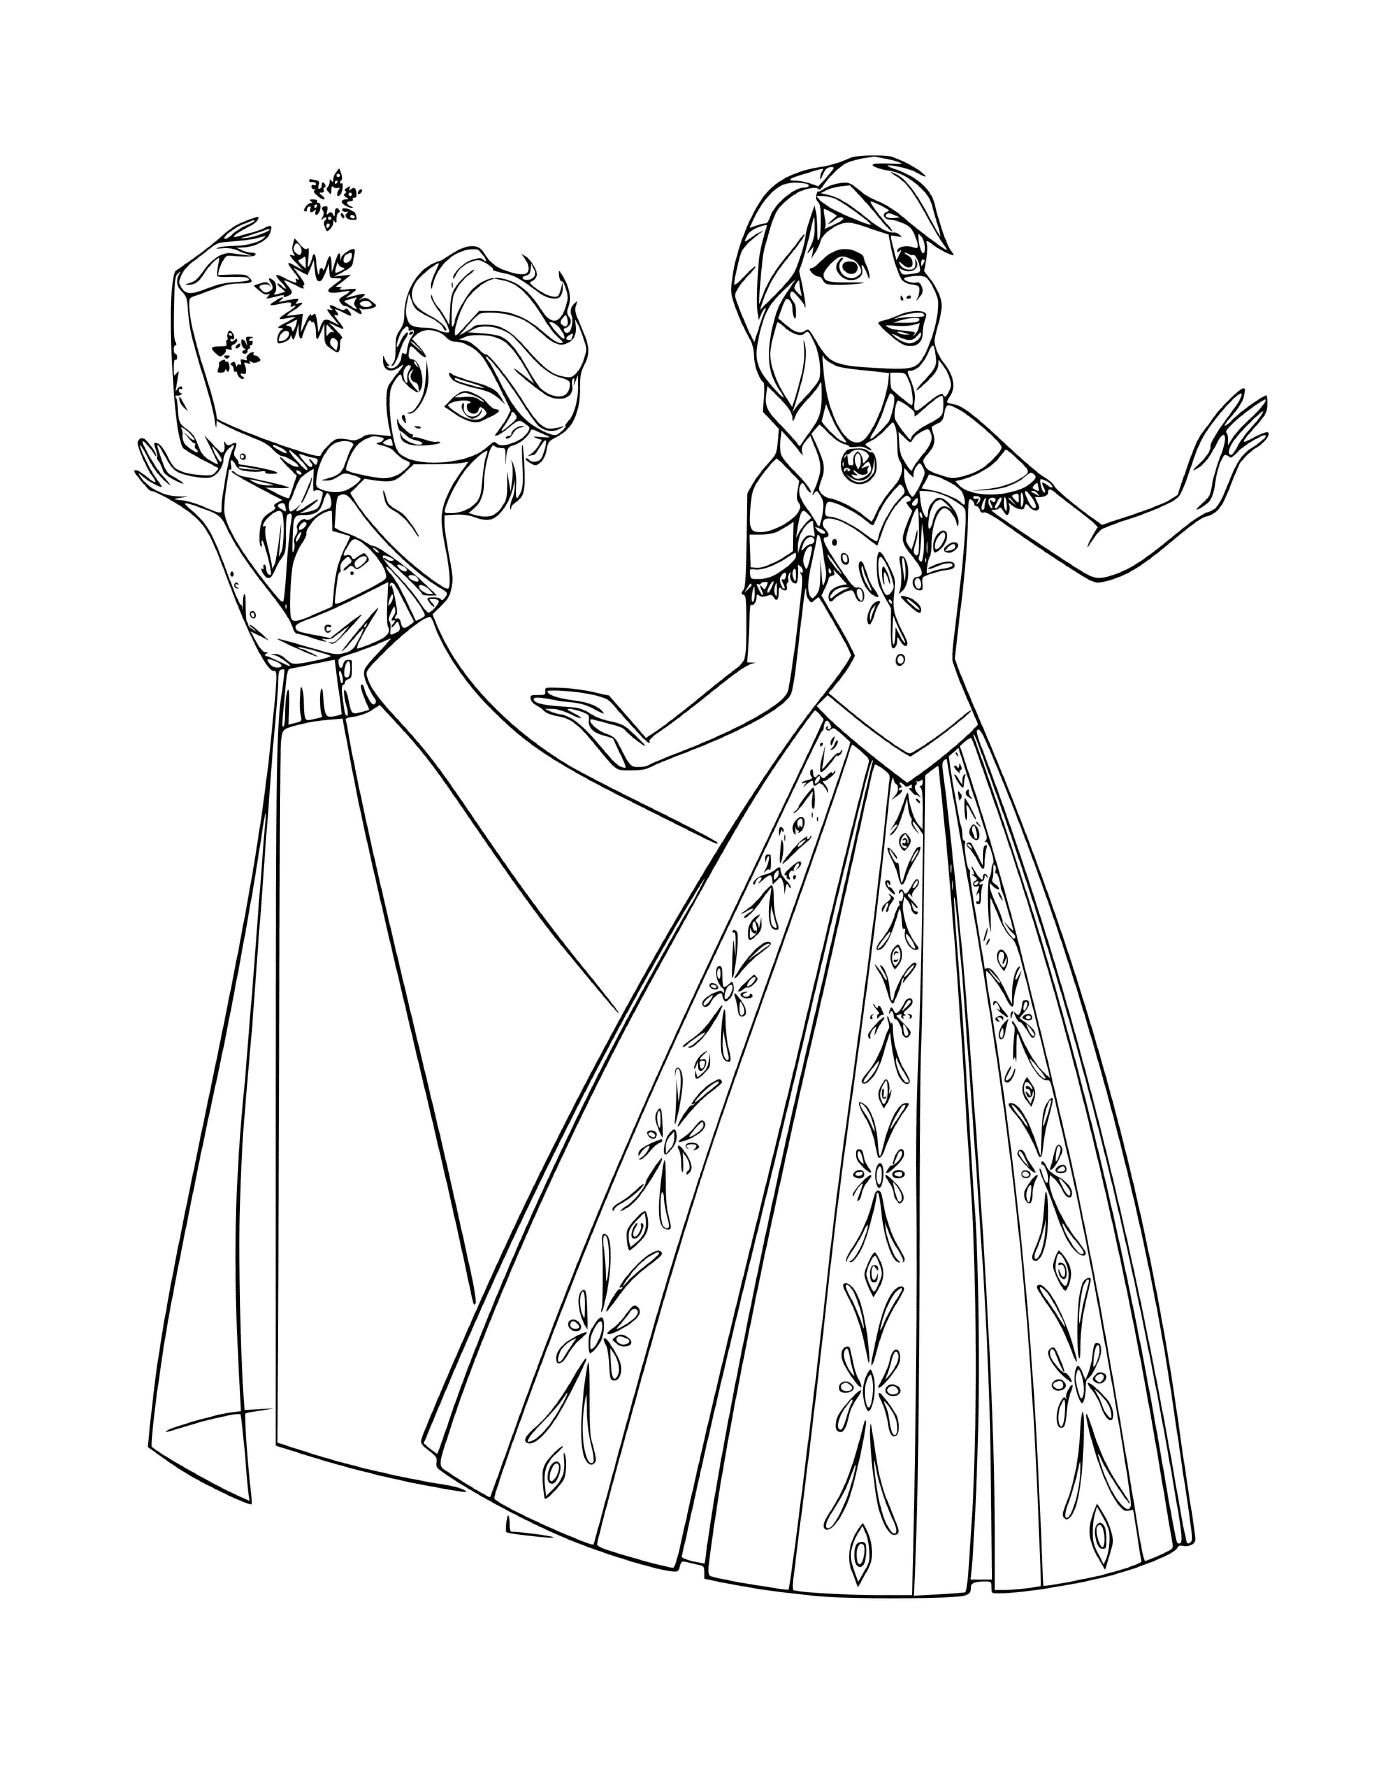  Anna und Elsa von der Schneekönigin 